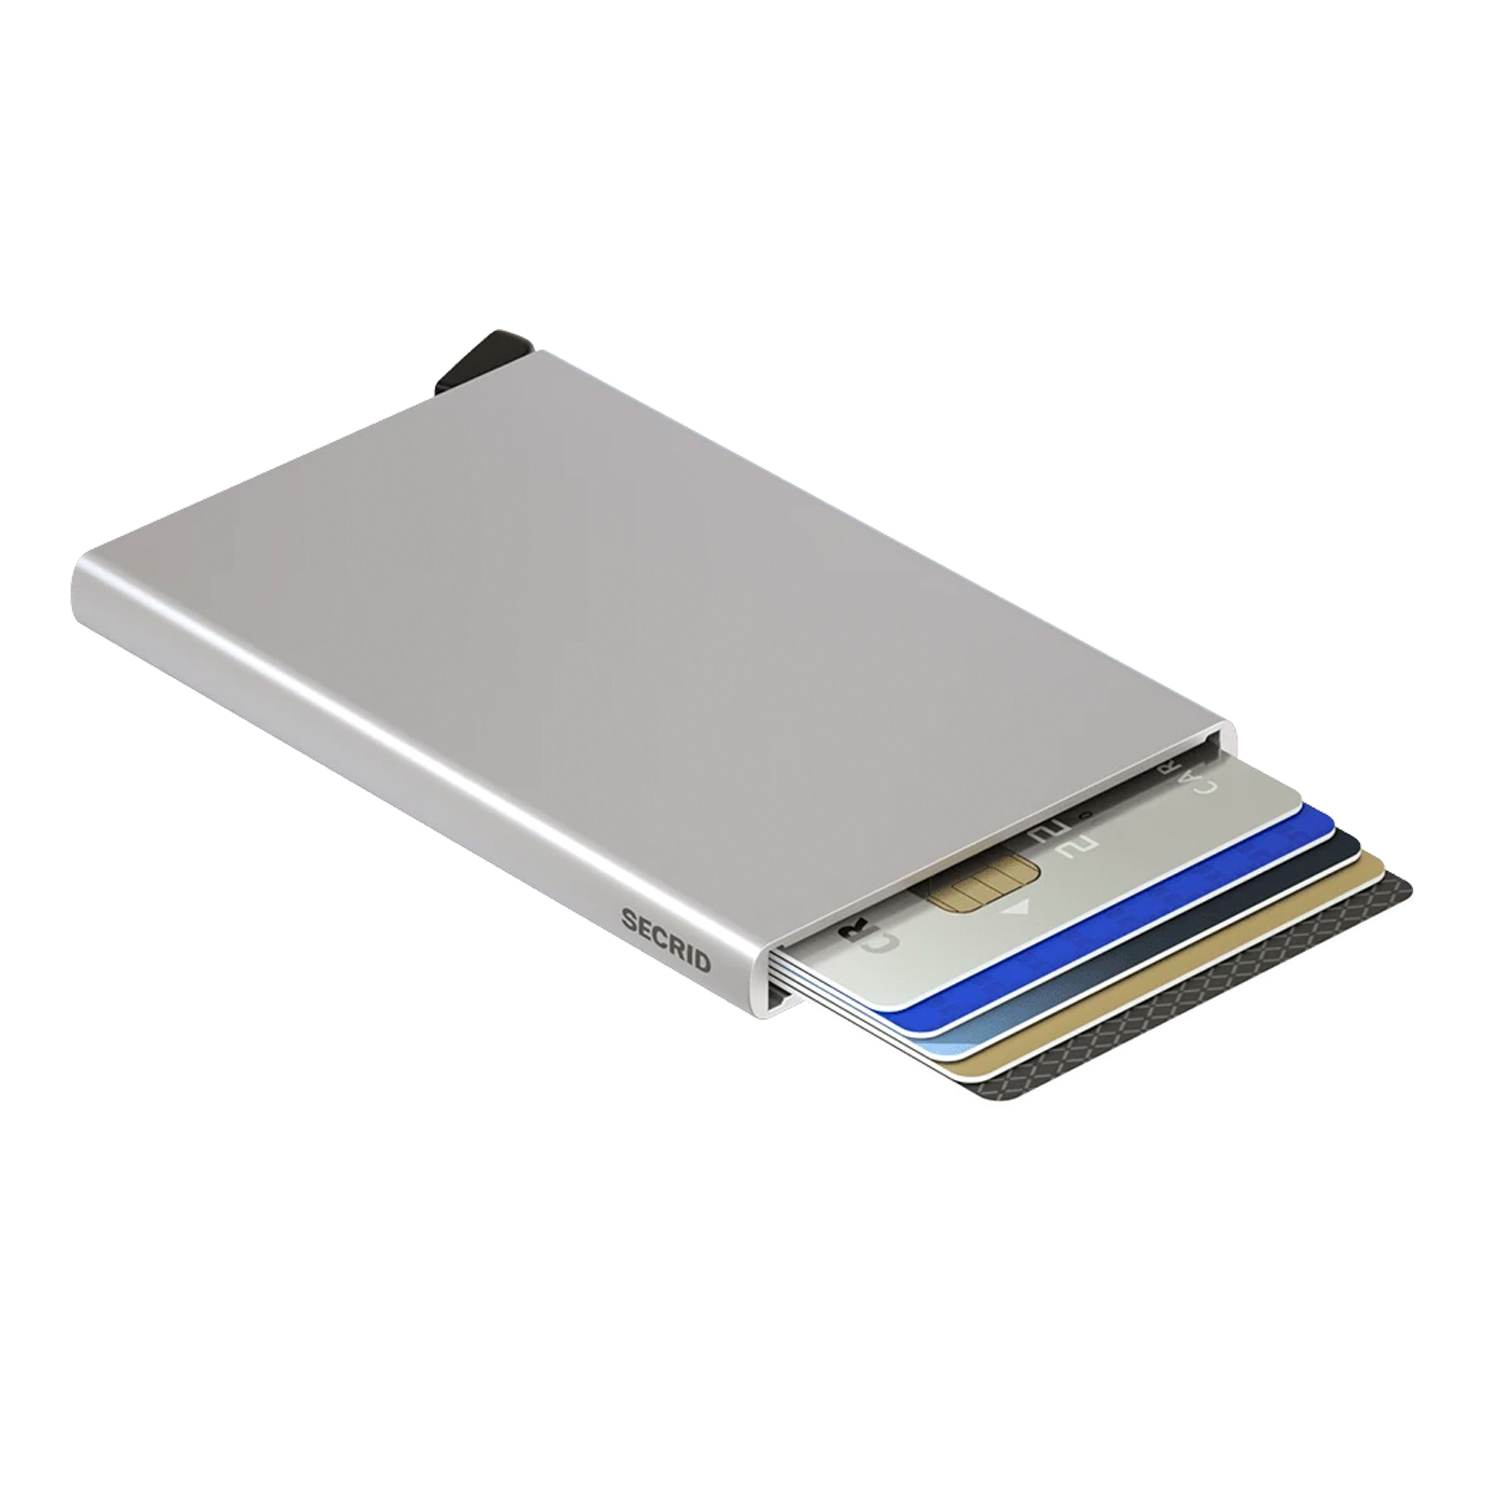 Secrid Cardprotector (silver)